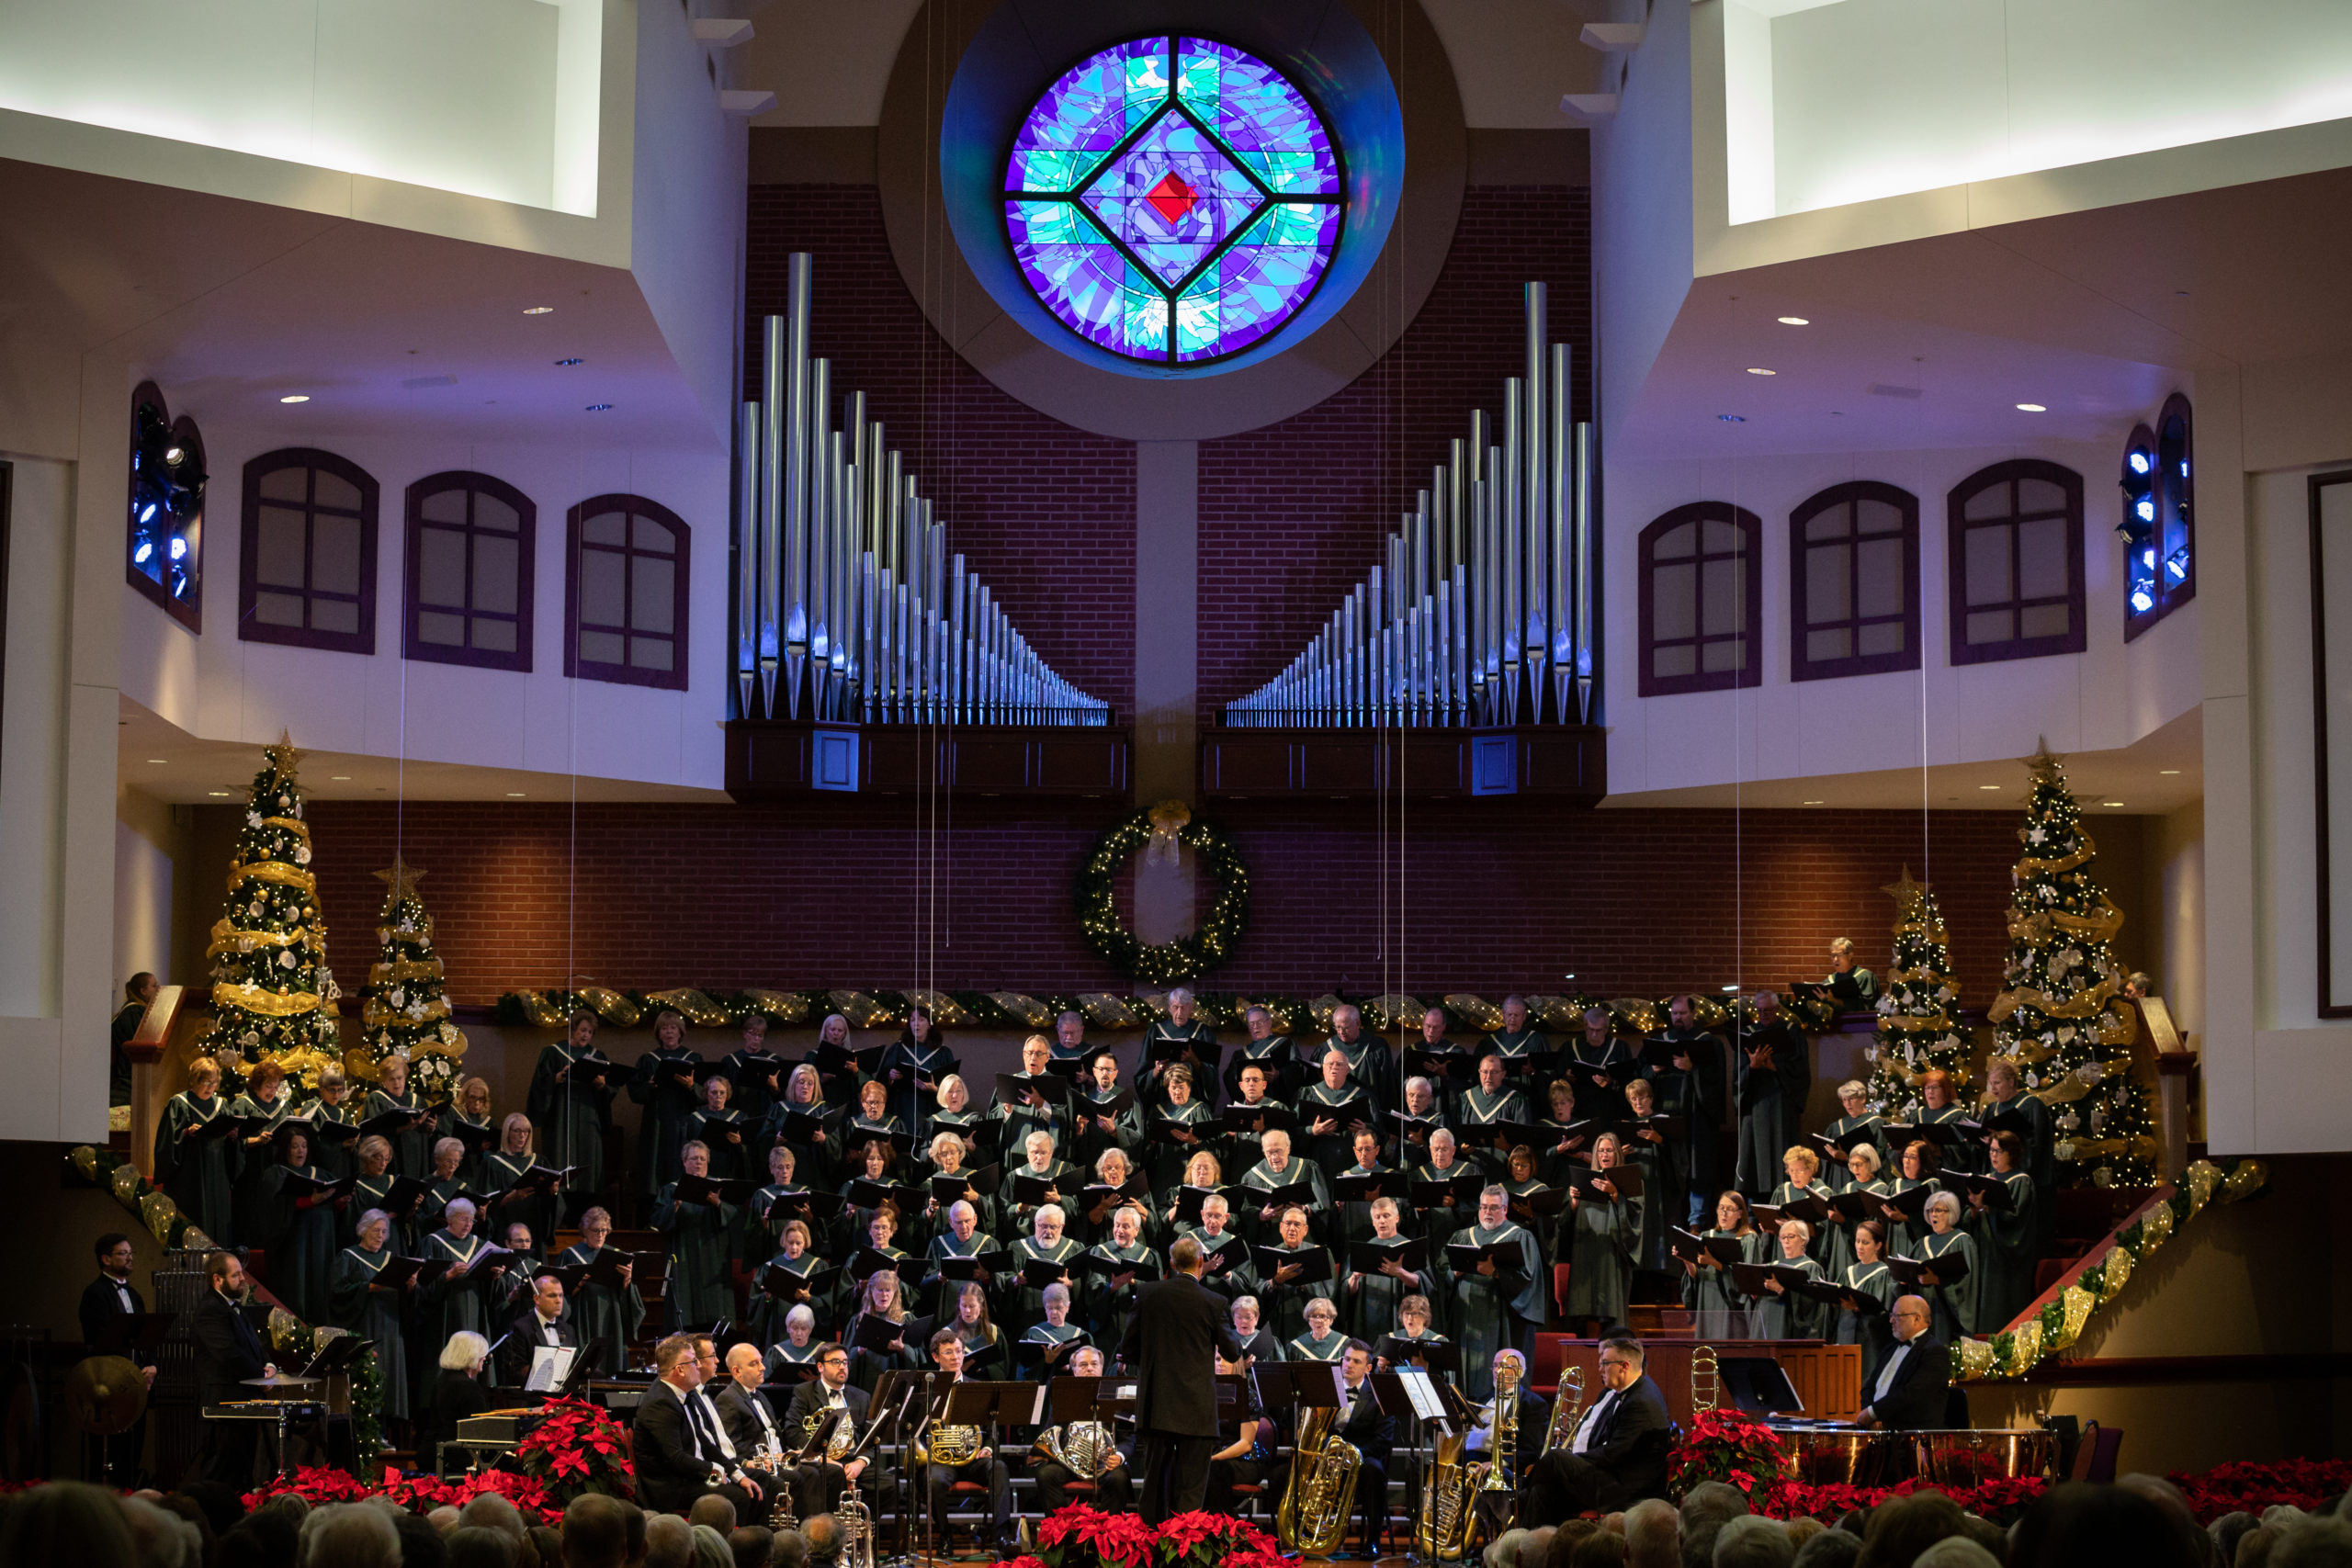 choir singing at christmas